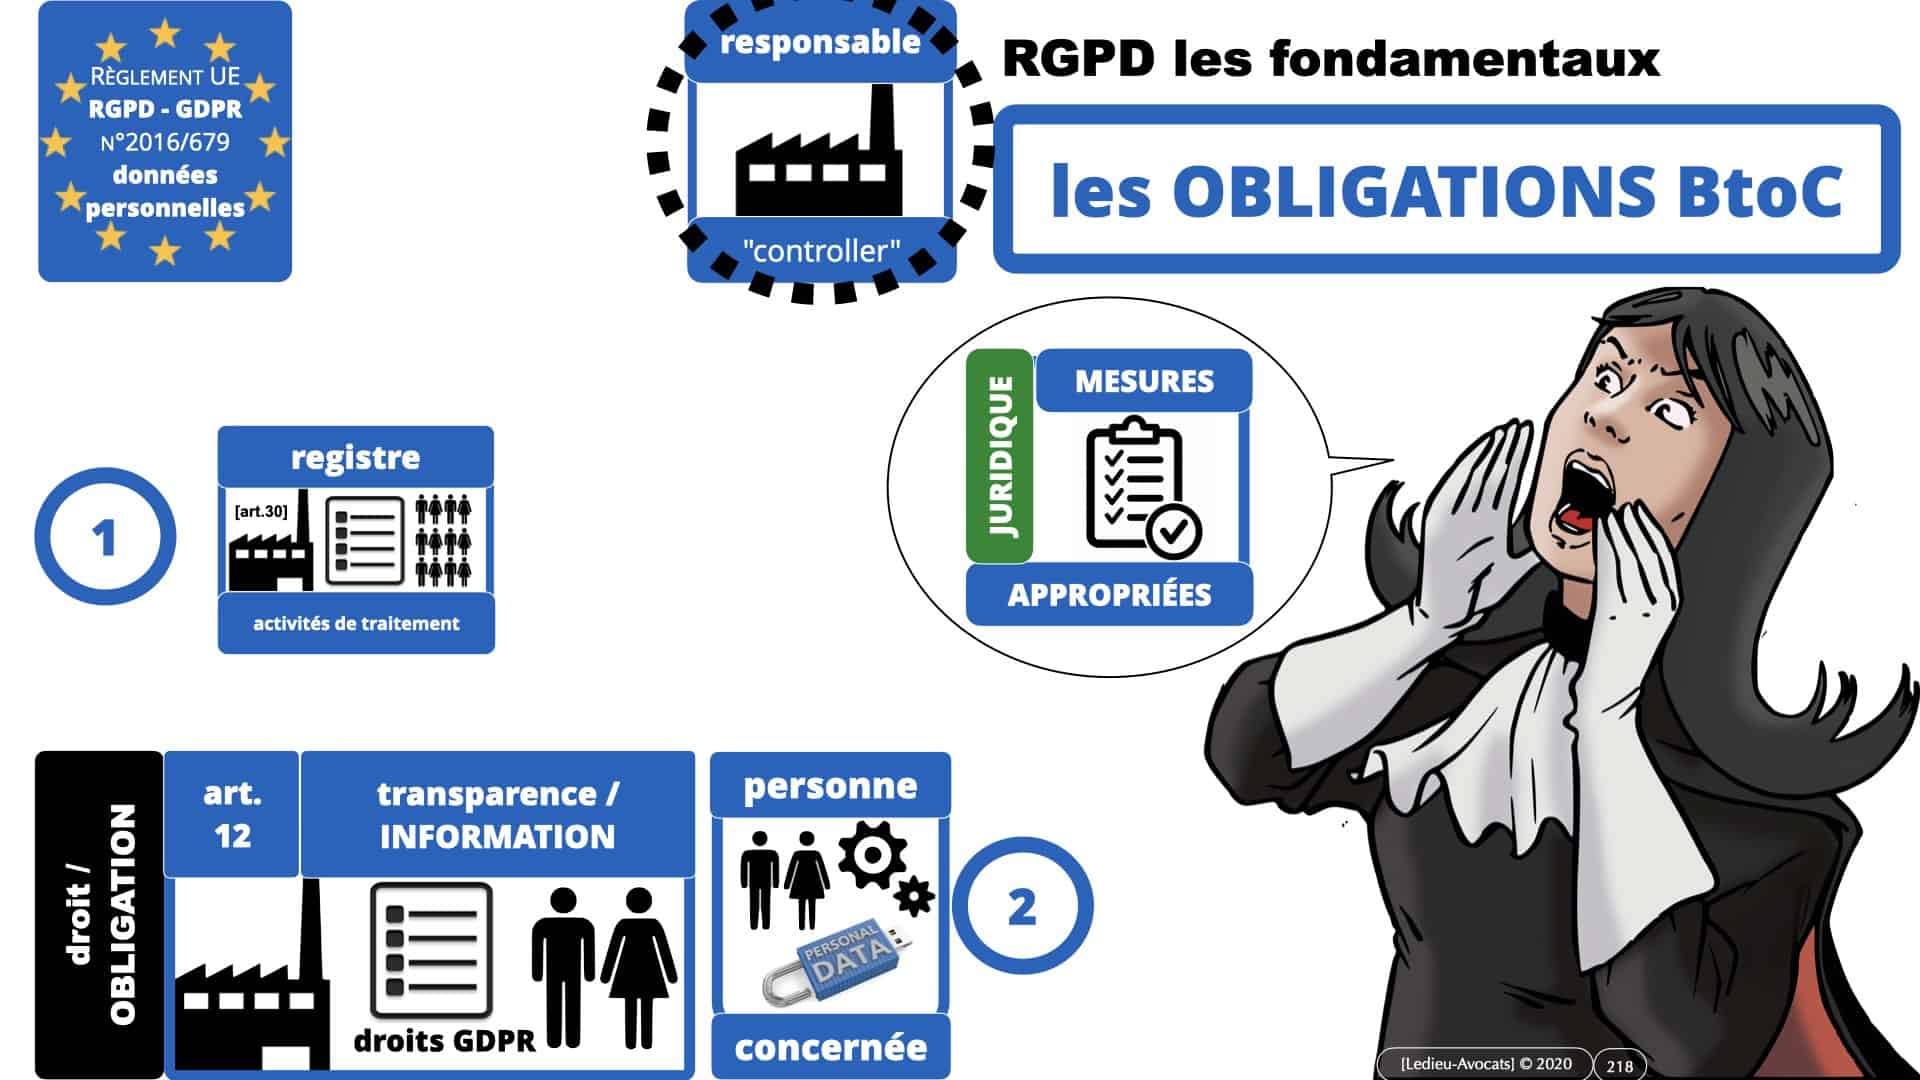 RGPD e-Privacy données personnelles jurisprudence formation Lamy Les Echos 10-02-2021 ©Ledieu-Avocats.218